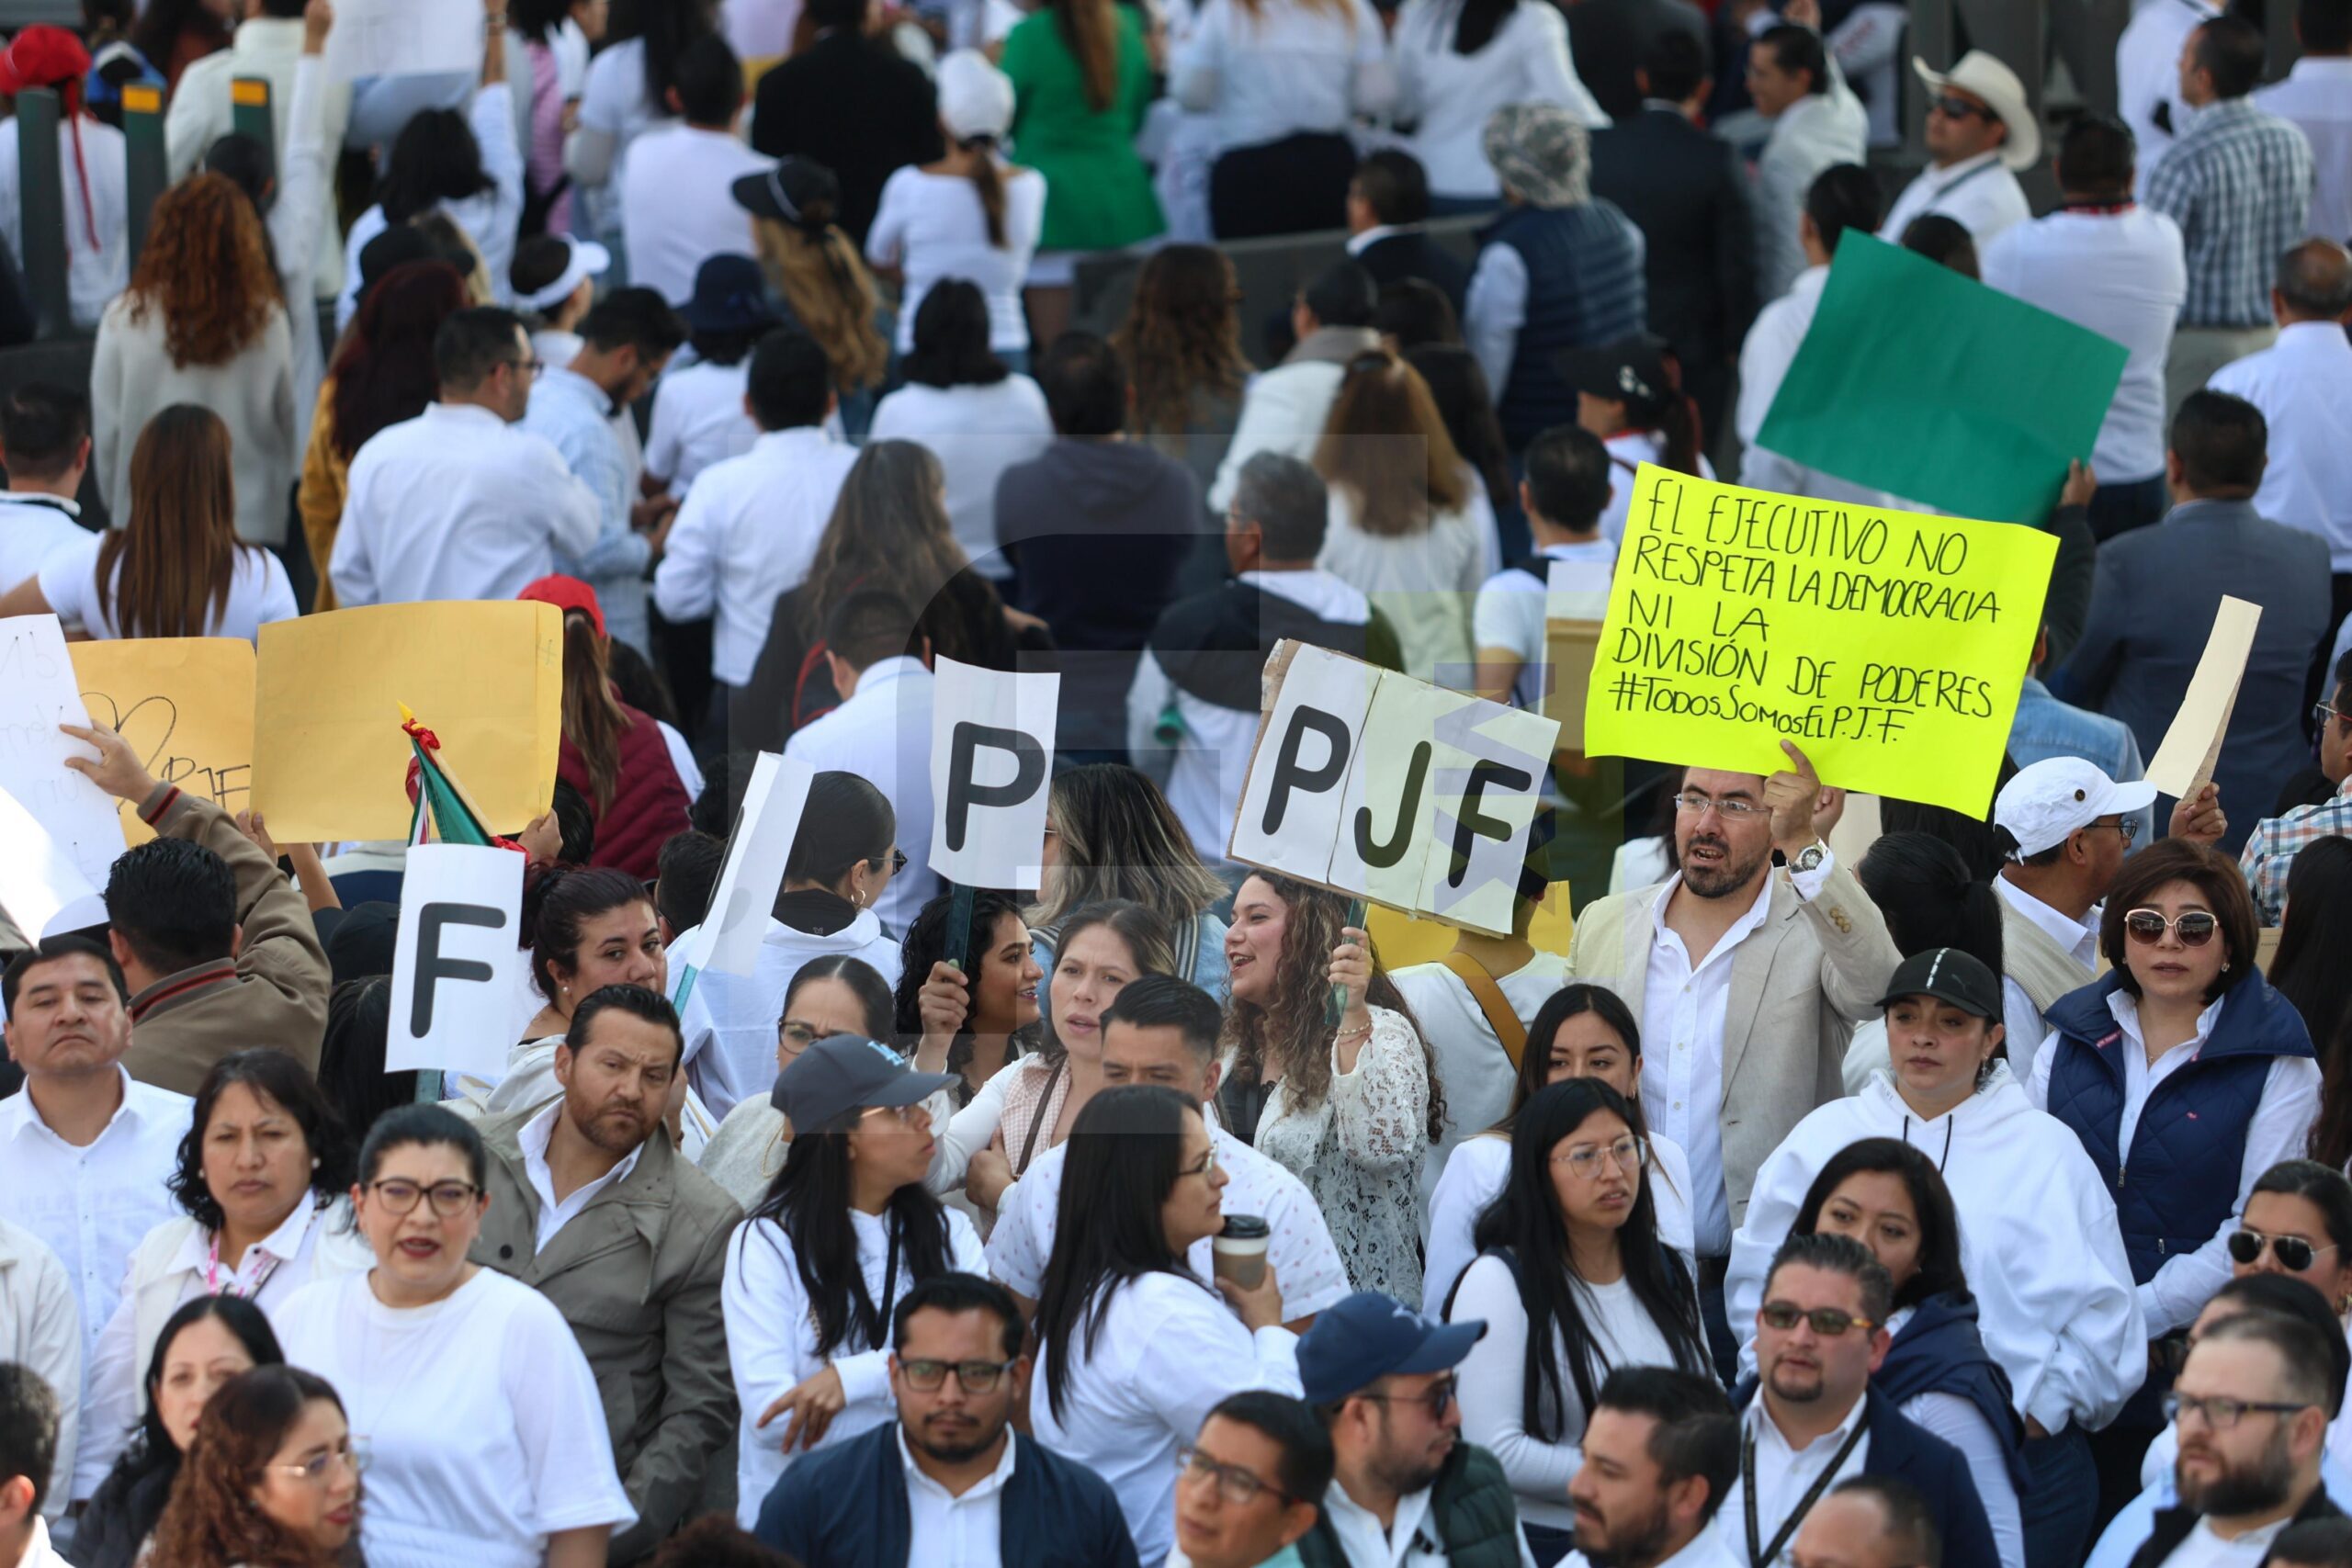 Continúan protestas del PJF en Toluca